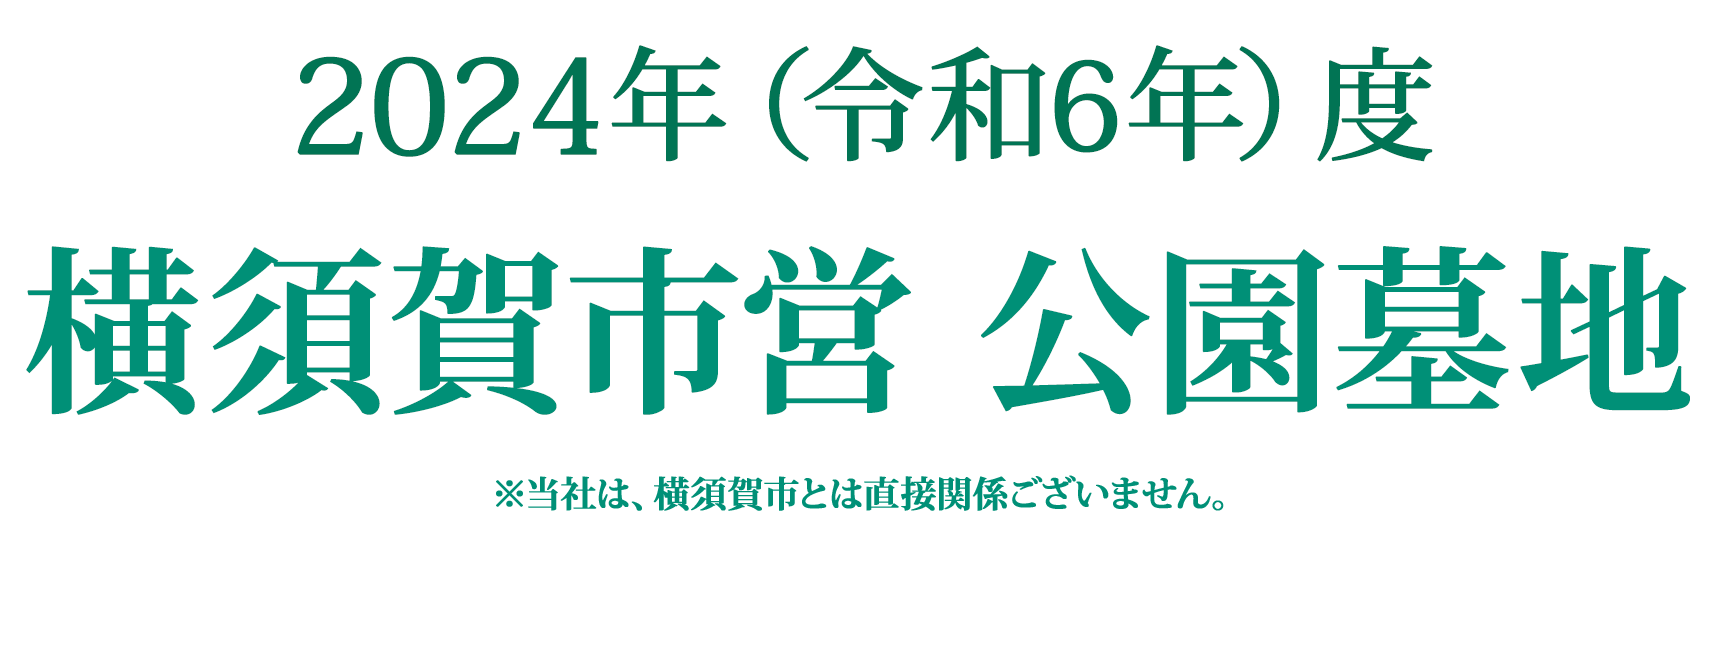 2023年度 横須賀市営 公園墓地 募集期間:2023年10月2日(月)〜11月30日(木)